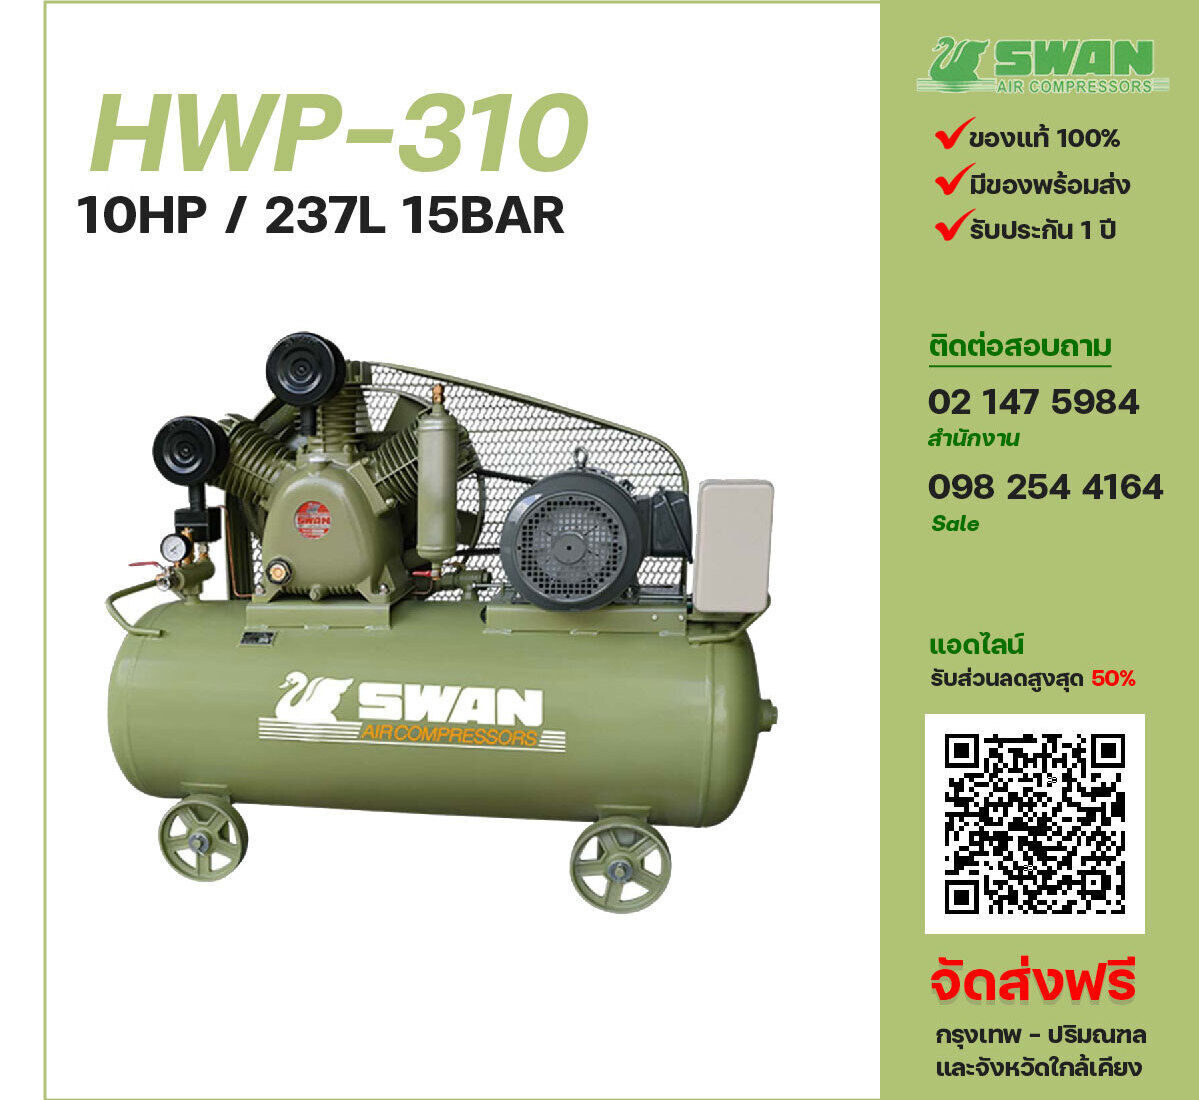 ปั๊มลมสวอนแรงดันสูง SWAN Two-Stage HWP-310 380V ปั๊มลมลูกสูบ ขนาด 3 สูบ 10 แรงม้า 237 ลิตร SWAN พร้อมมอเตอร์ ไฟ 380V ส่งฟรี กรุงเทพฯ-ปริมณฑล รับประกัน 1 ปี